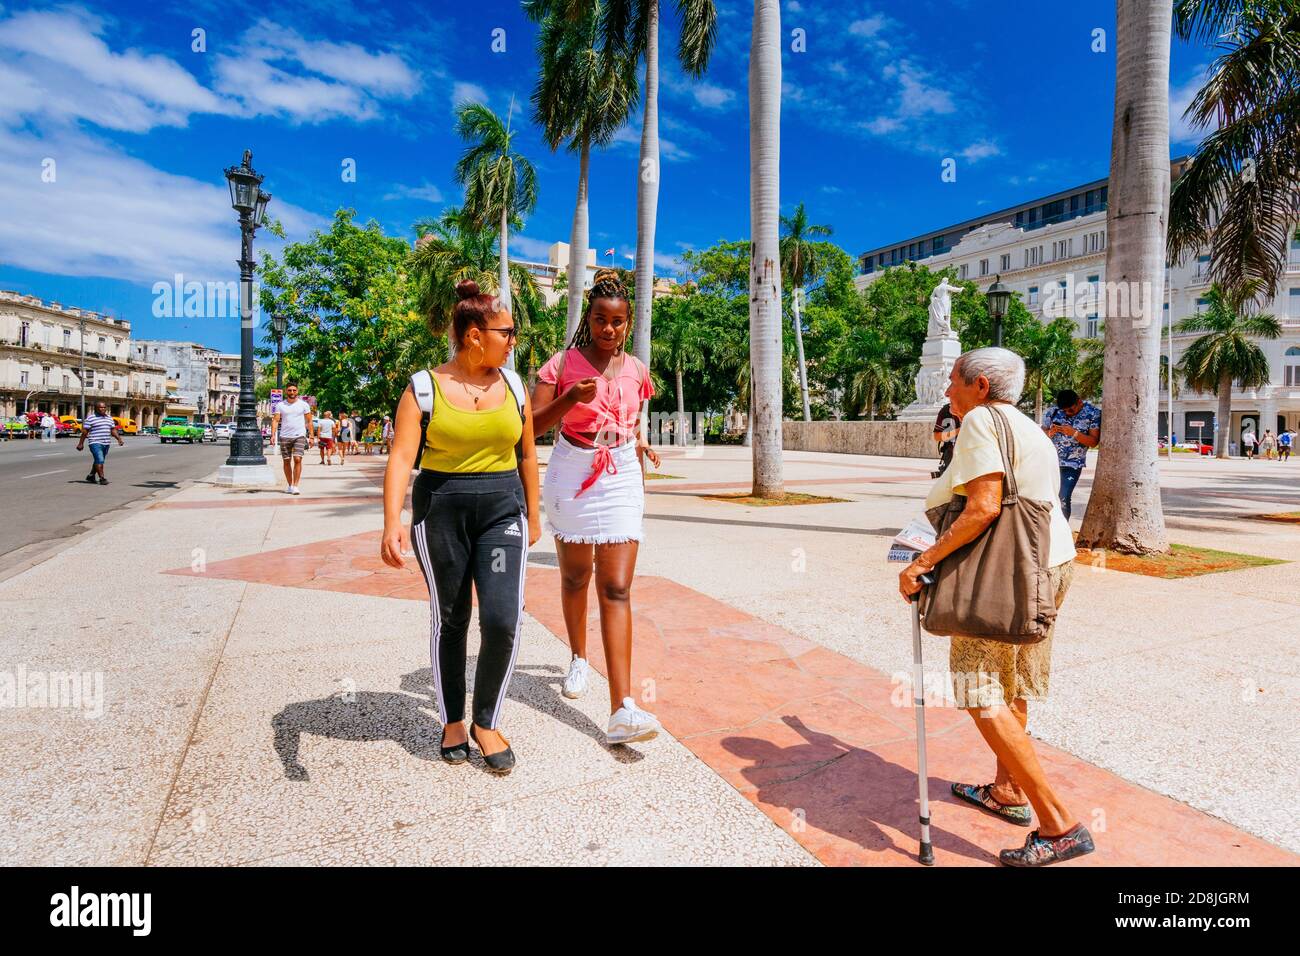 Due giovani donne cubane e una donna anziana camminarono attraverso Central Park - Parque Central. L'Avana. Cuba, America Latina e Caraibi Foto Stock